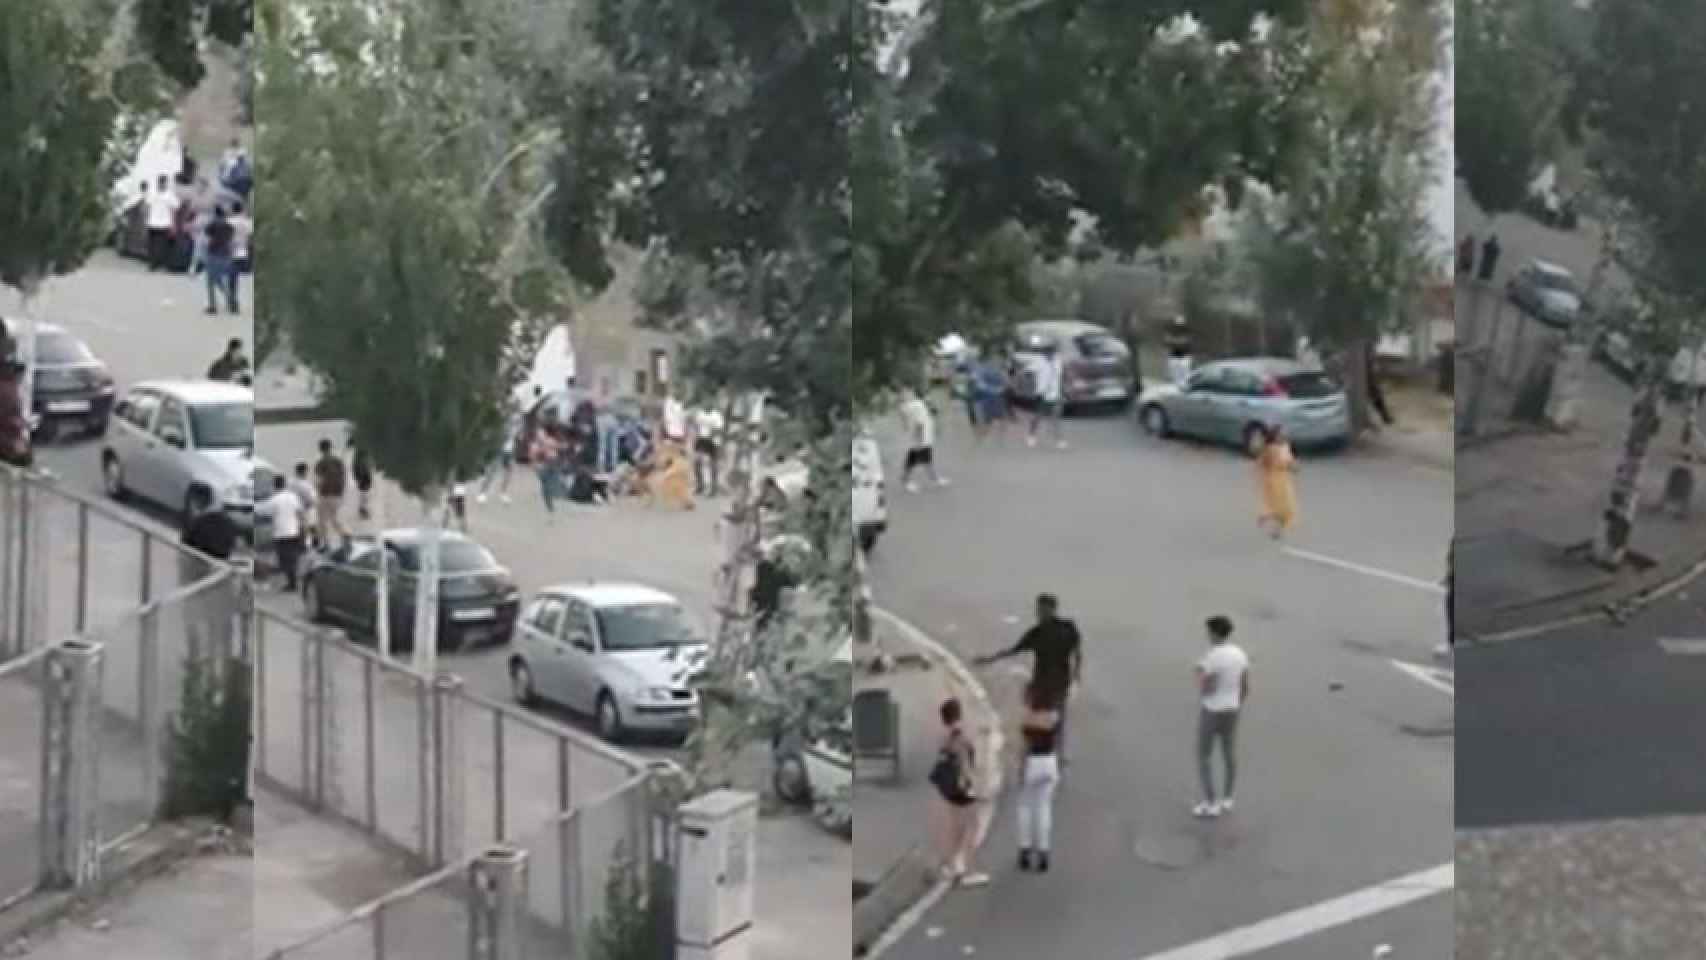 Fotogramas del vídeo donde se observa el apuñalamiento a Kristen a la salida de la discoteca Capitolio de Cornellà, cuyos presuntos autores han sido detenidos